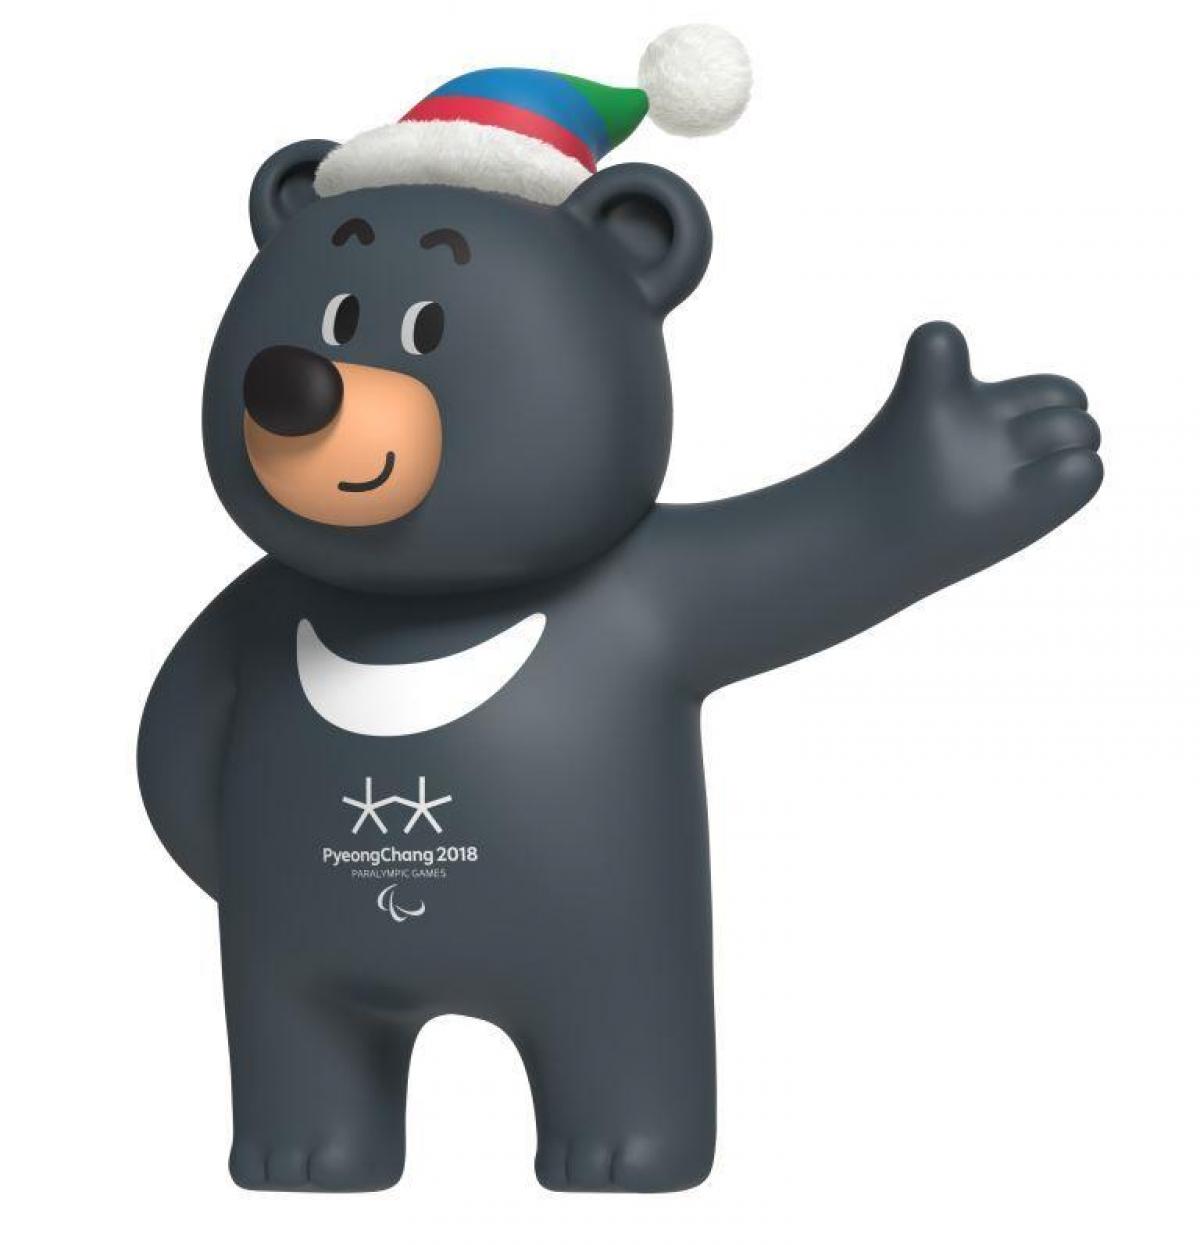 2018 Korea Pyeongchang Winter Olympics Limited Edition Bandabi Mascot Badge Pin 